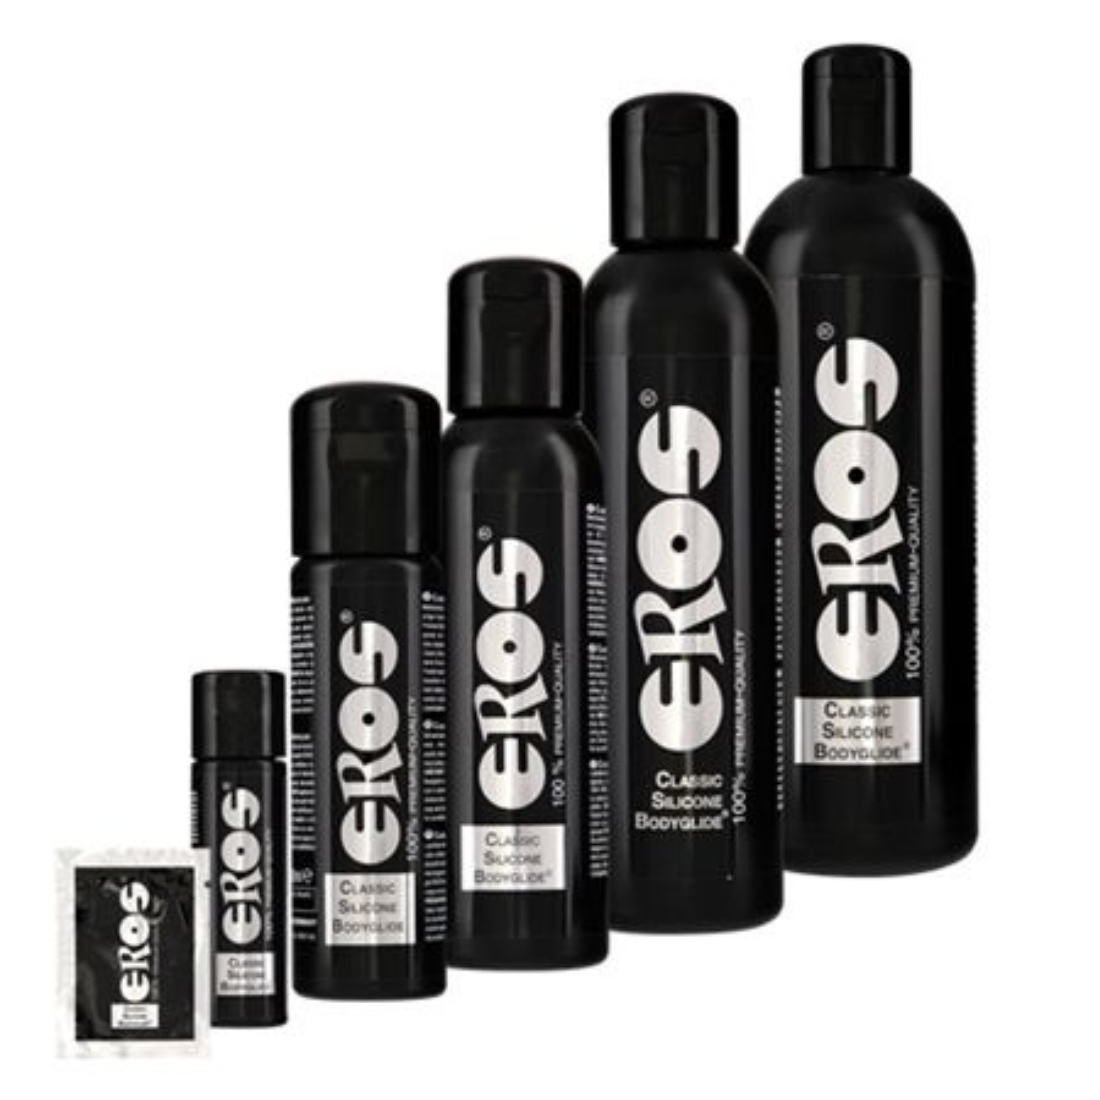 Zwarte fles met 250 ml siliconen glijmiddel van het Duitse merk Eros. Perfect voor gay mannen en te koop bij Flavourez.